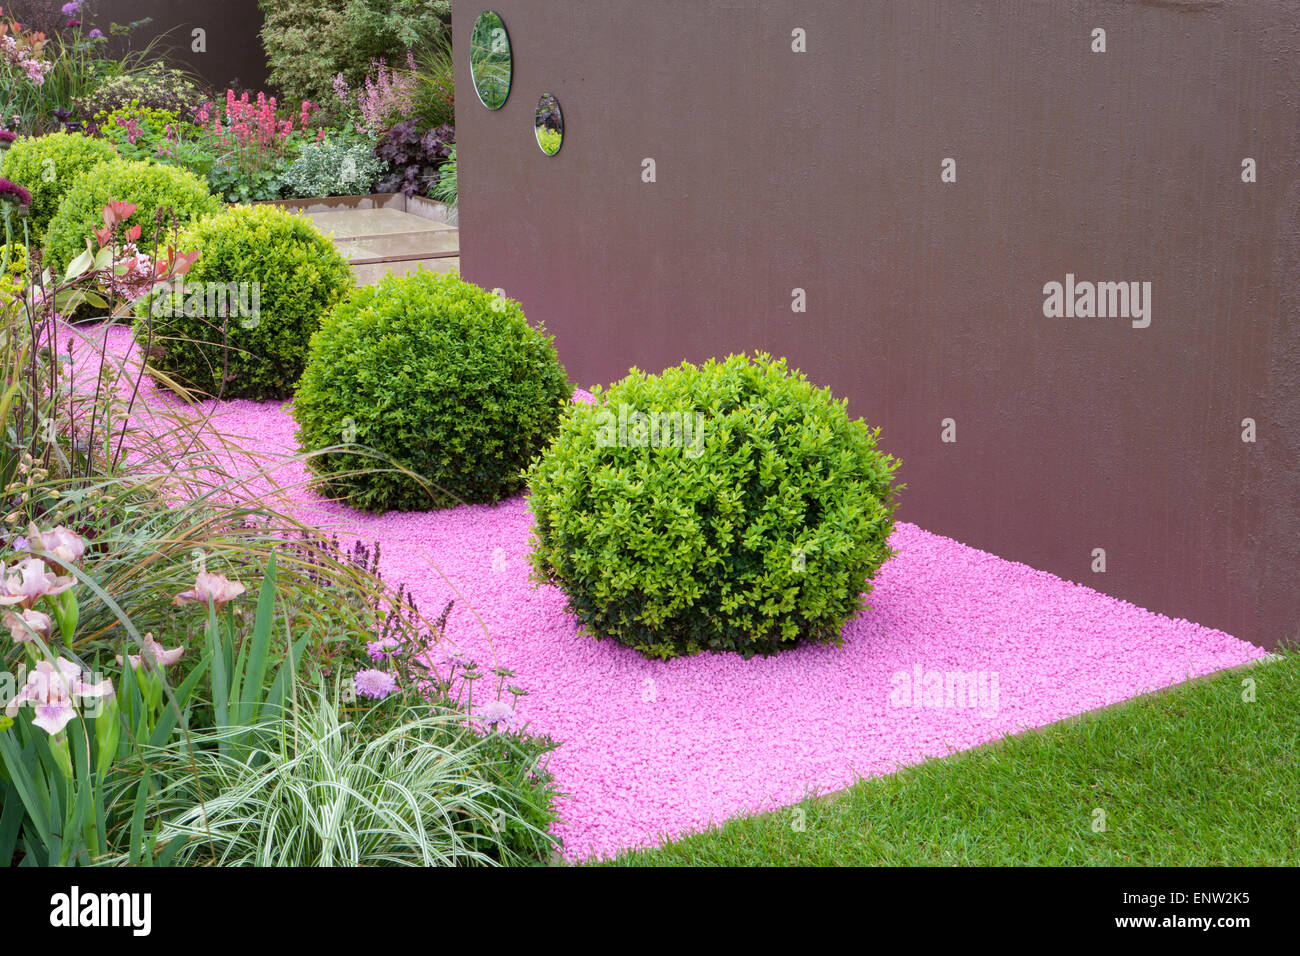 Petit jardin de gravier moderne avec Buxus sempervirens - balles en boîte topiaire sur le paillis de gravier coloré jardin printemps Royaume-Uni Malvern Show Banque D'Images